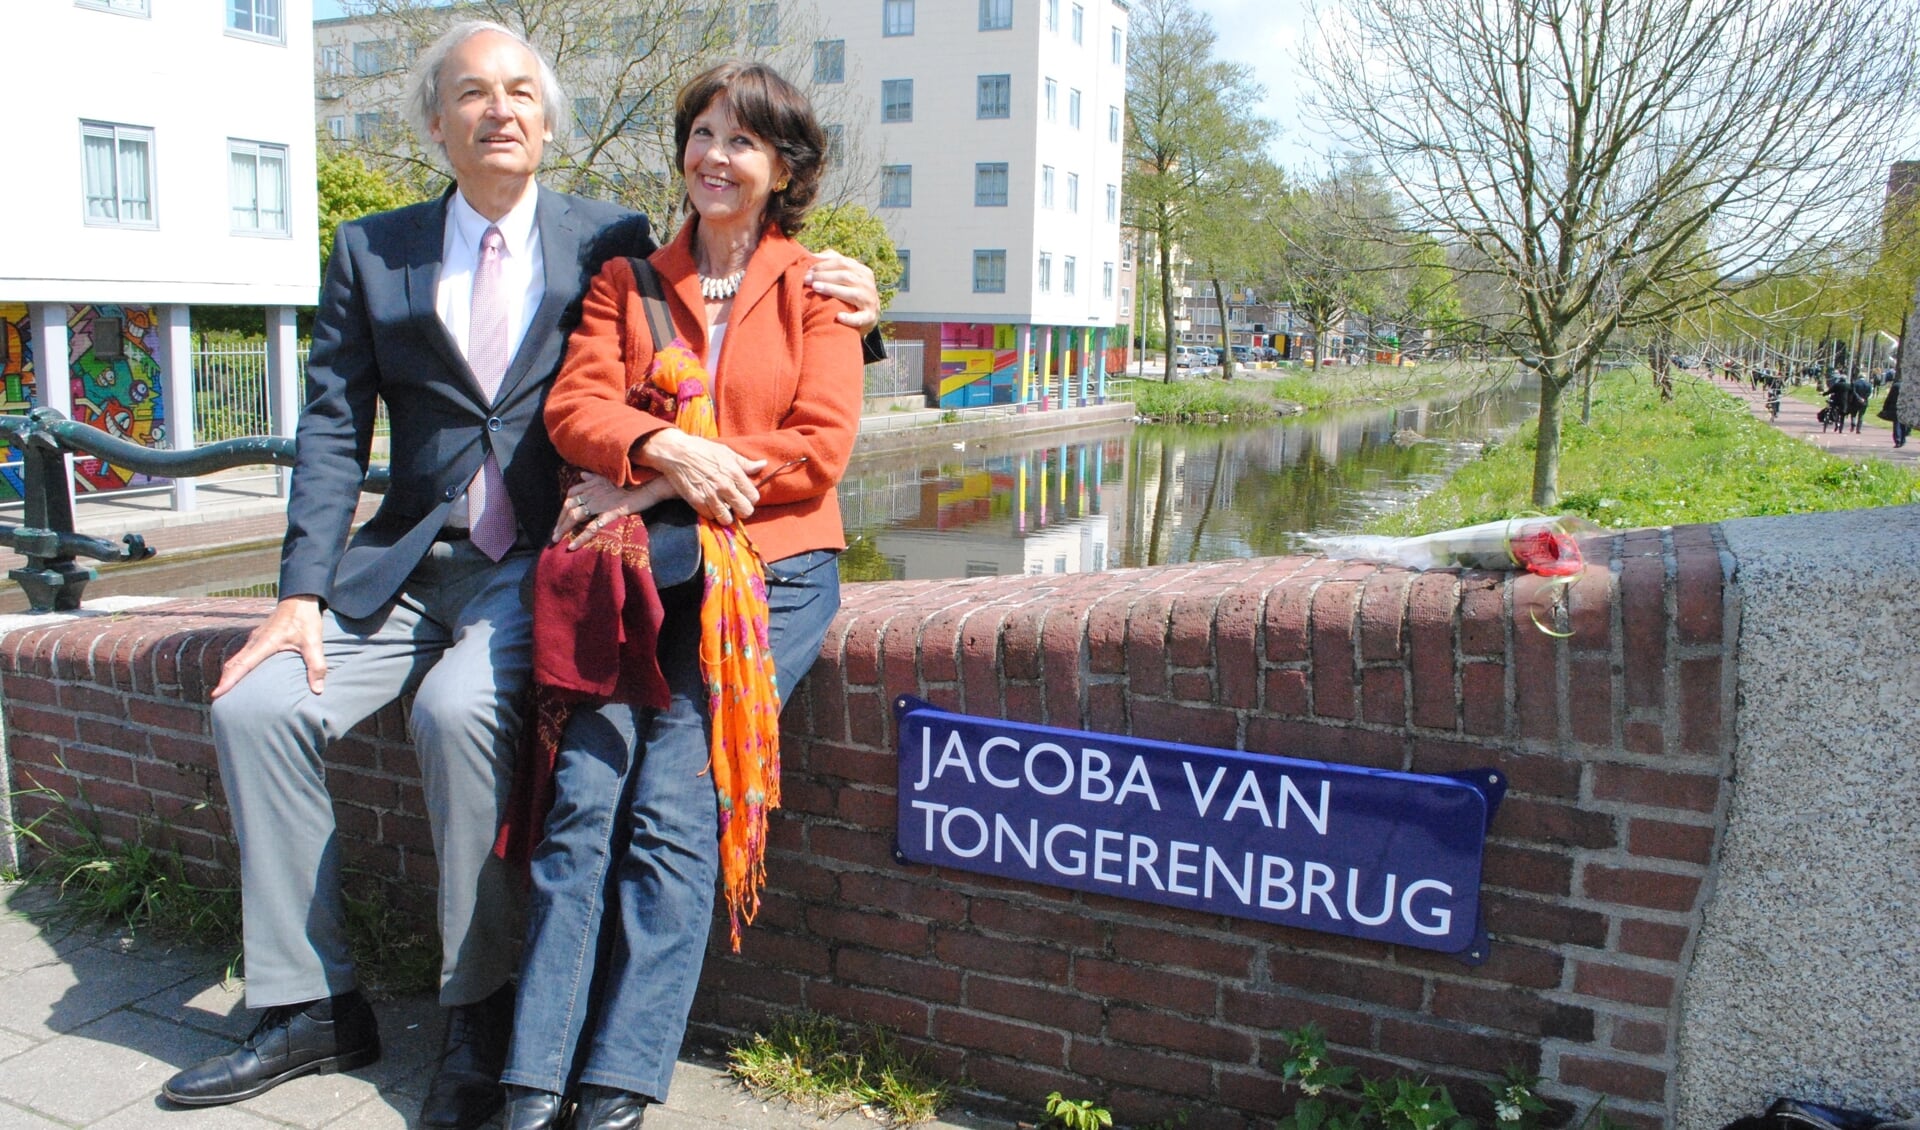 Paul en Els van Tongeren op de Jacoba van Tongerenbrug in Amsterdam’. (foto 2018)